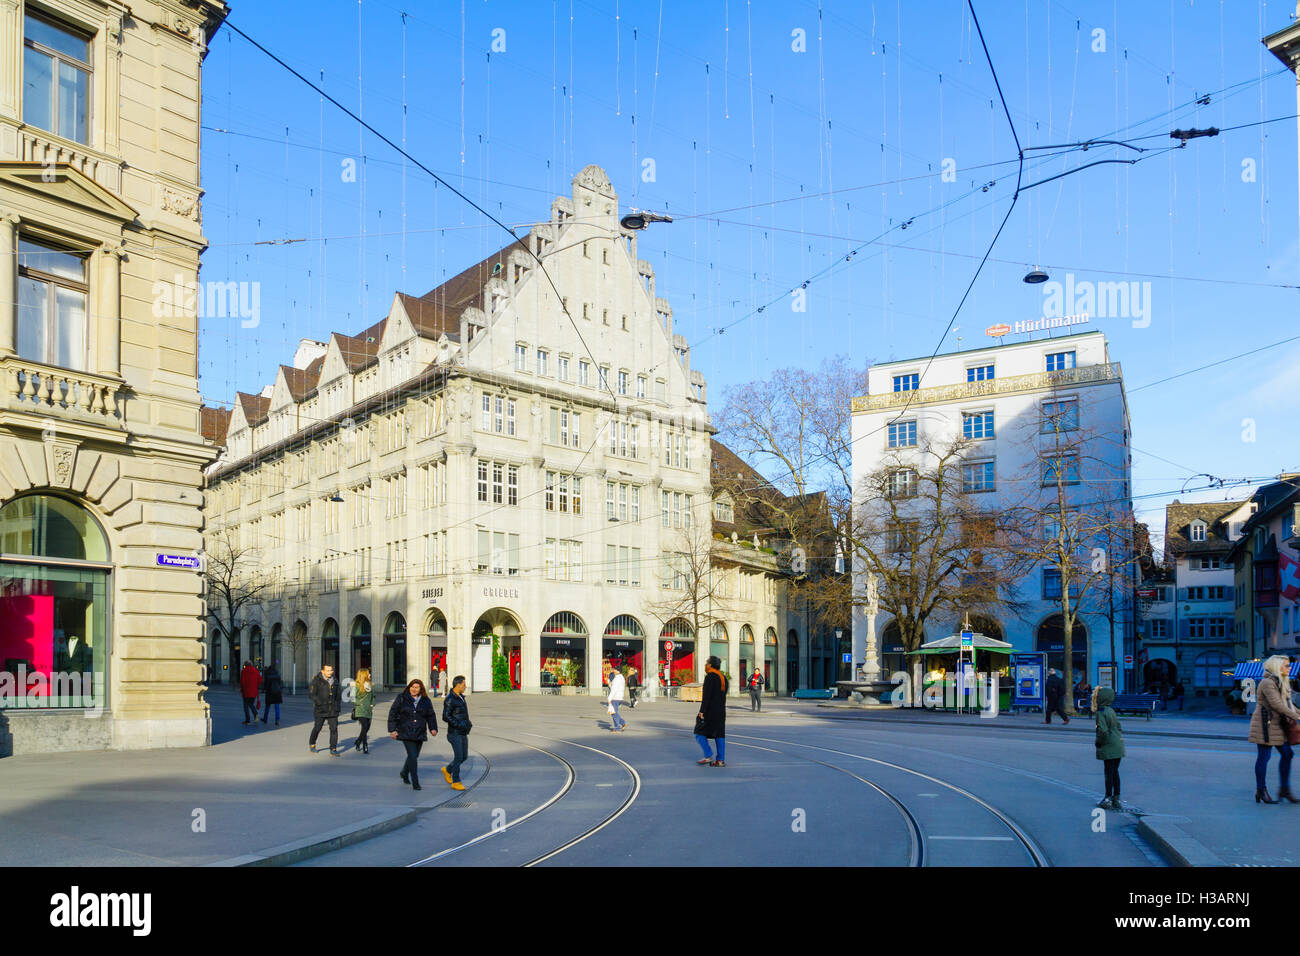 Zürich, Schweiz - 27. Dezember 2015: Szene quadratisch, mit einheimischen und Besuchern, in Zürich, Großbrit Paradeplatz (Parade) Stockfoto